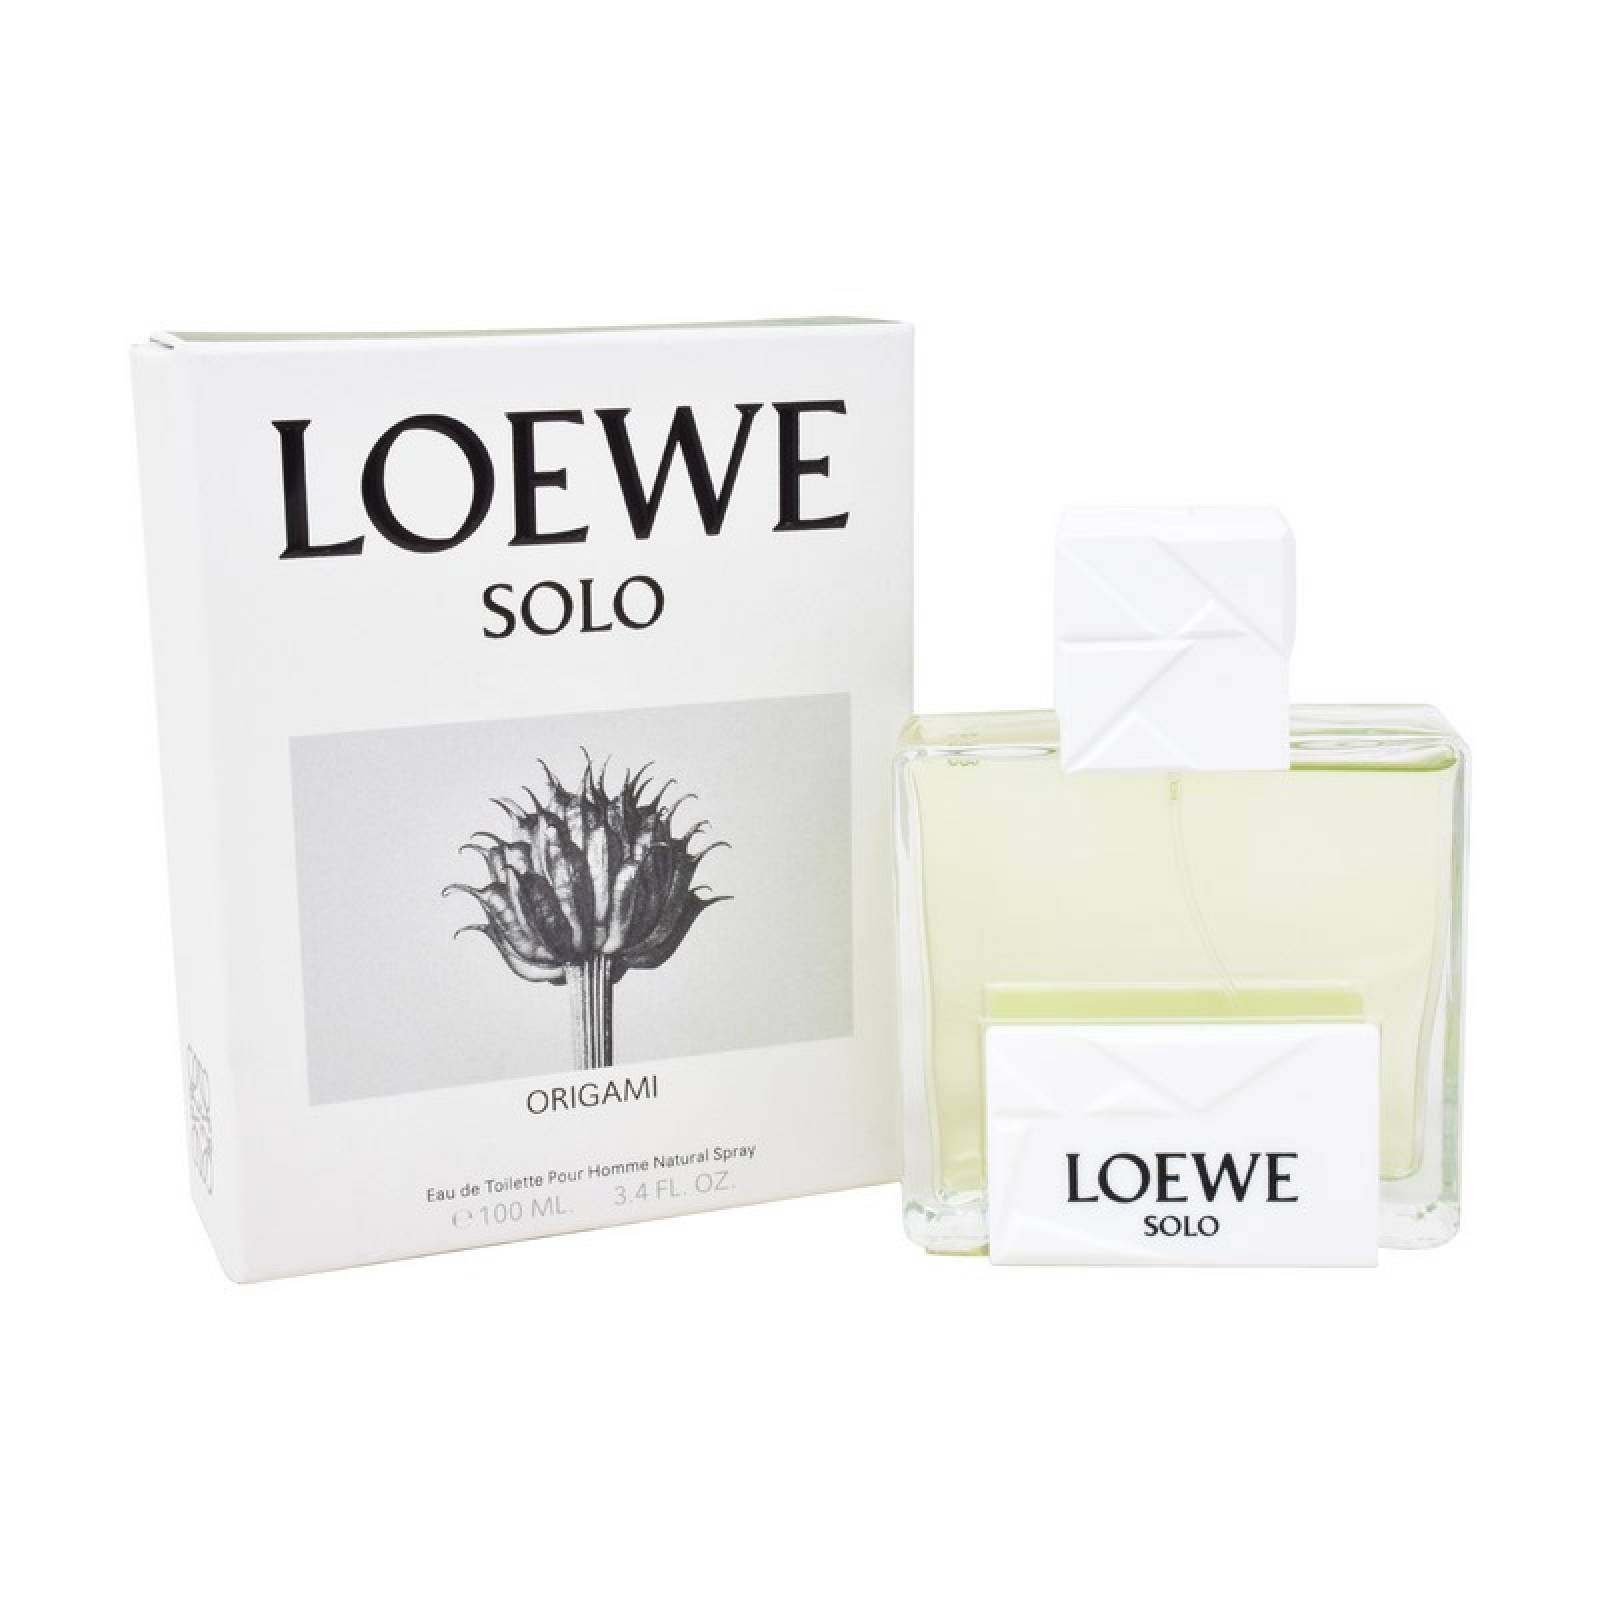 Solo Loewe Origami 100 ml Eau de Toilette de Loewe